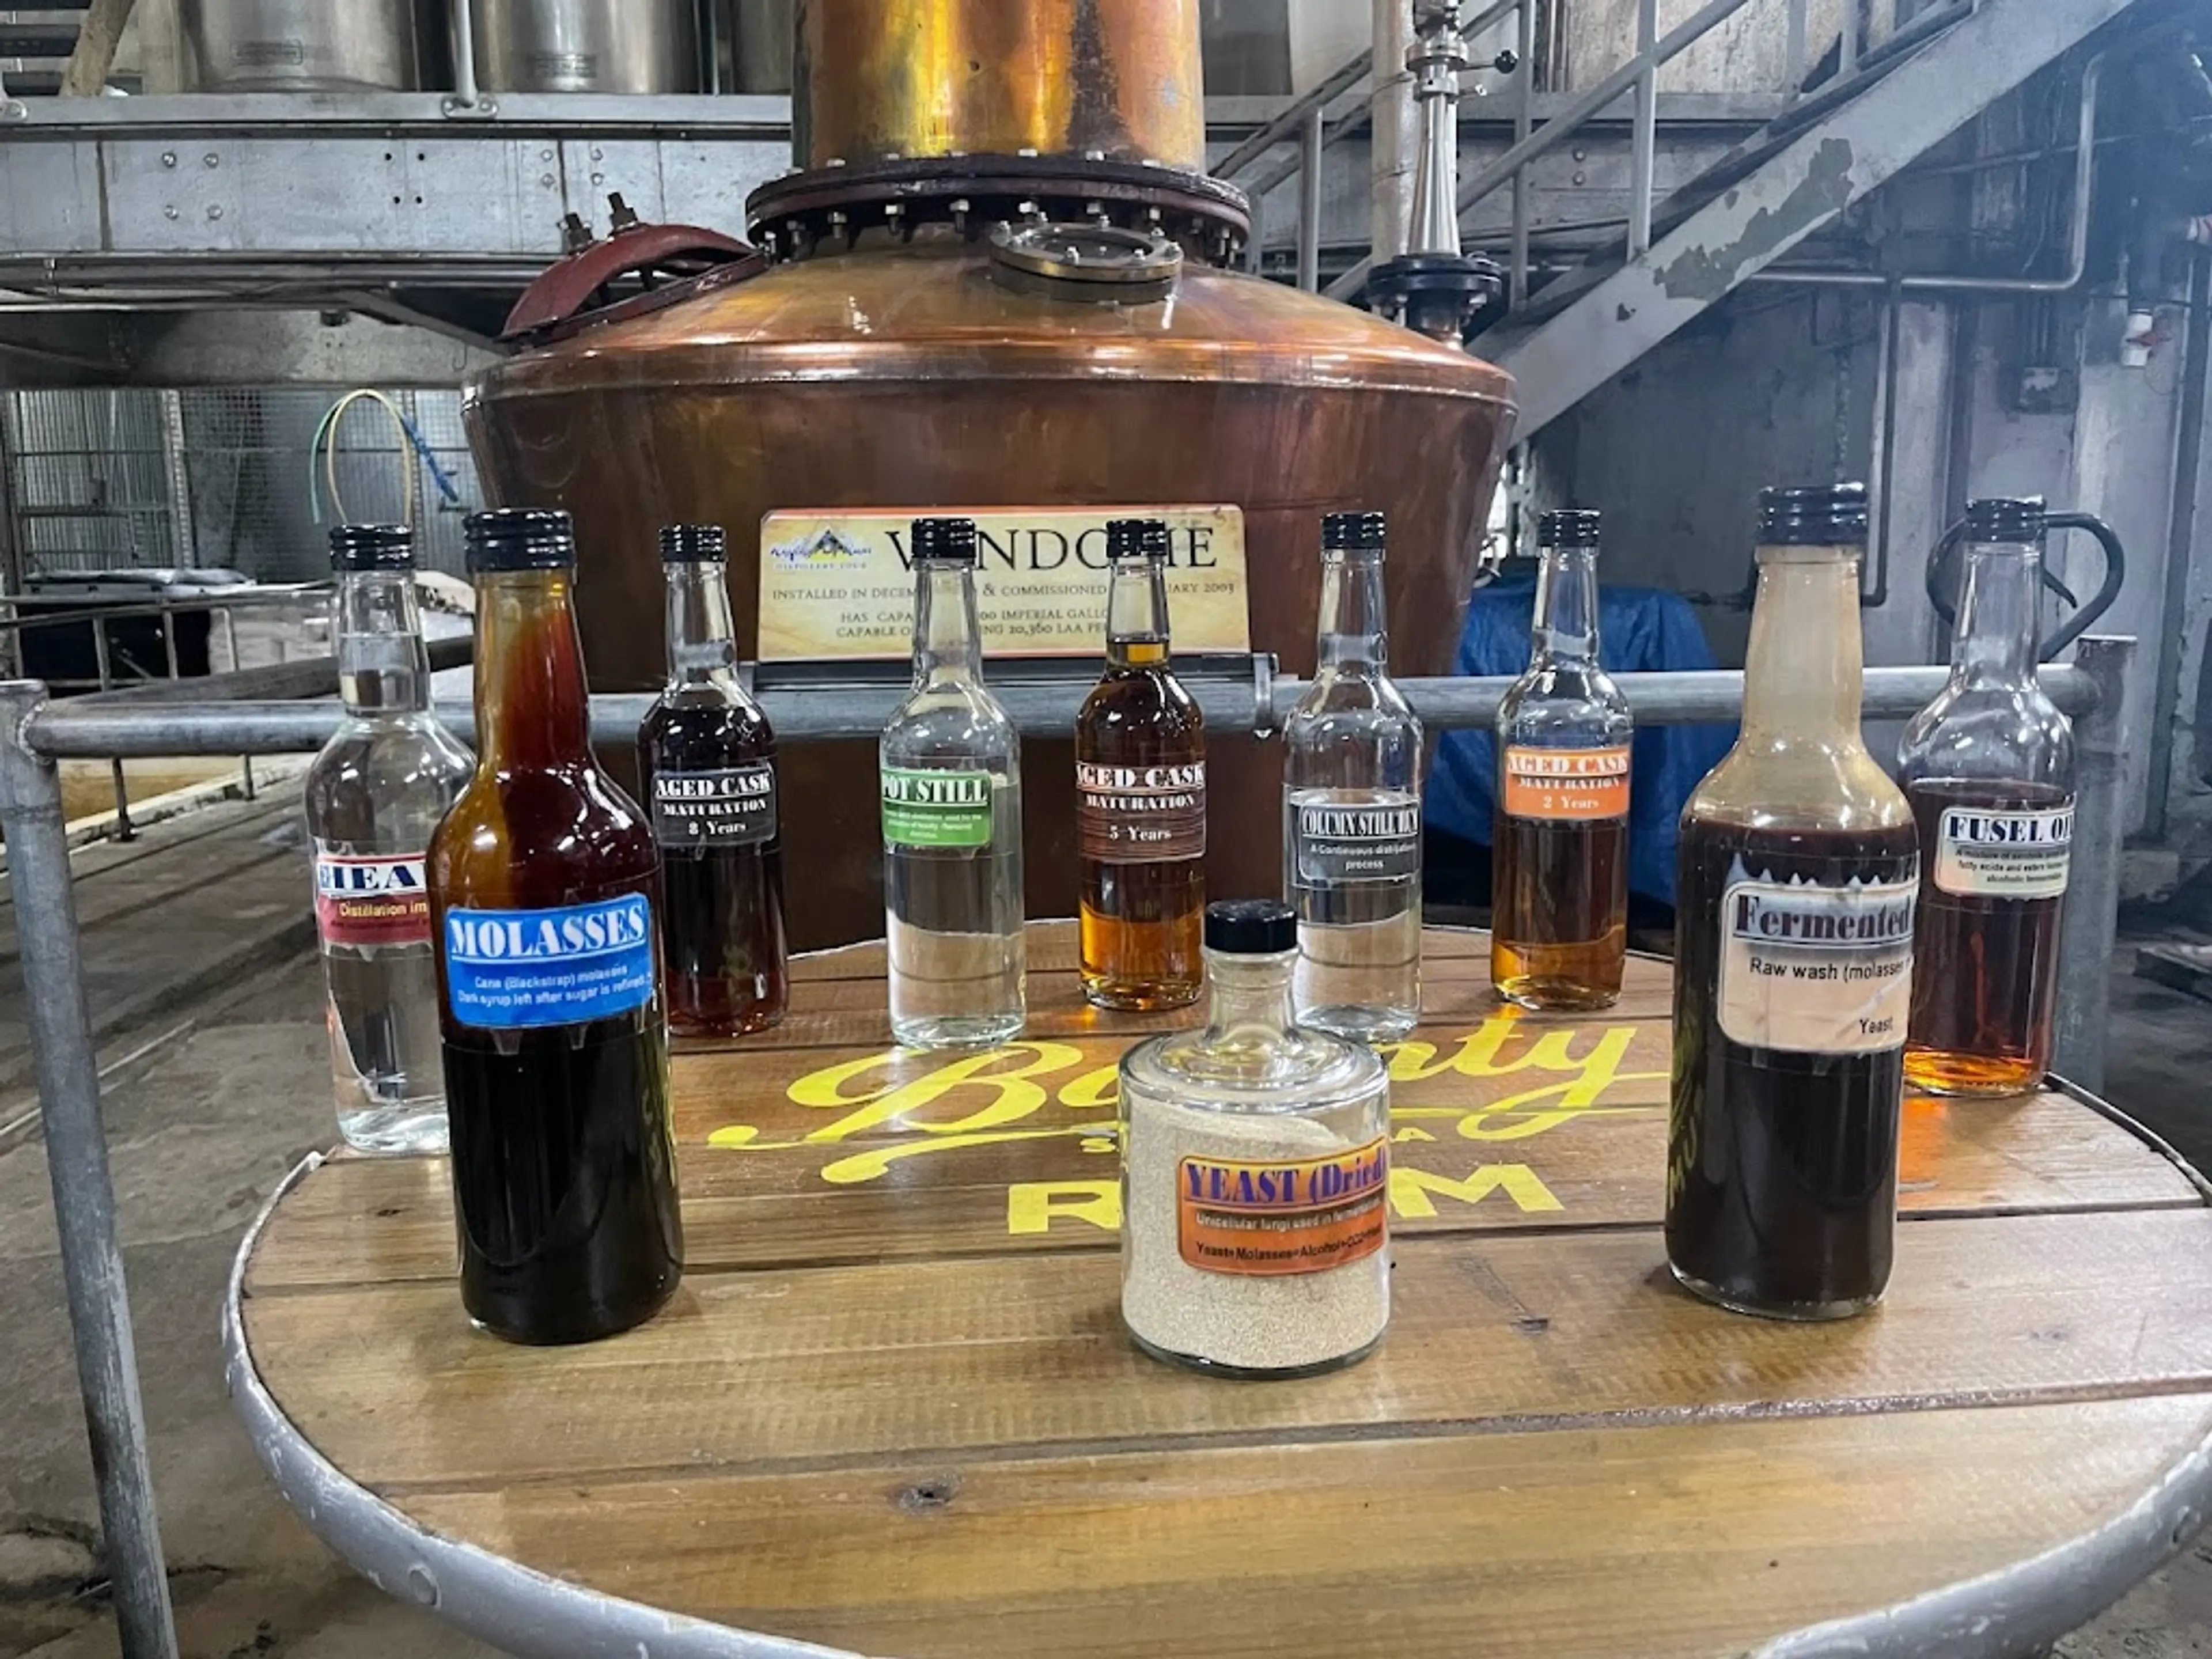 Local rum distillery